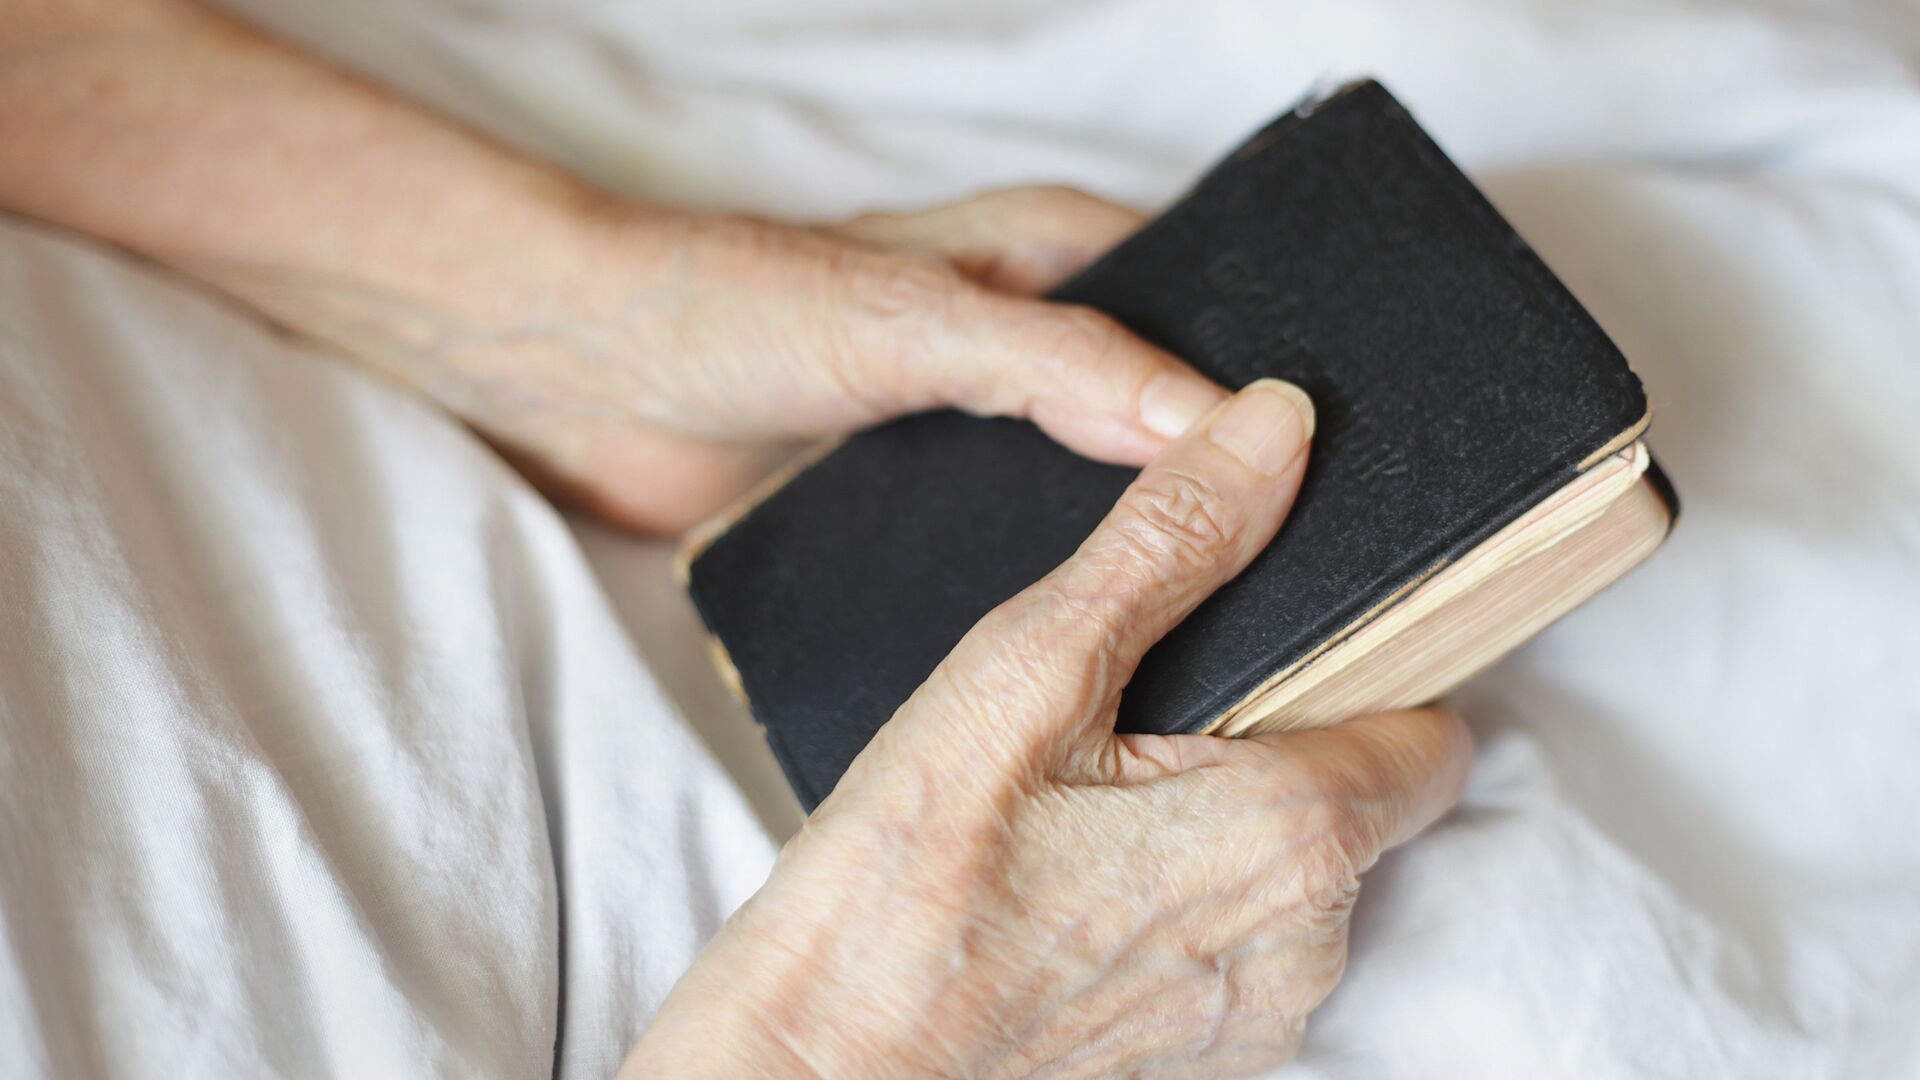 Библия в руках пожилого человека  - РИА Новости, 1920, 10.07.2021